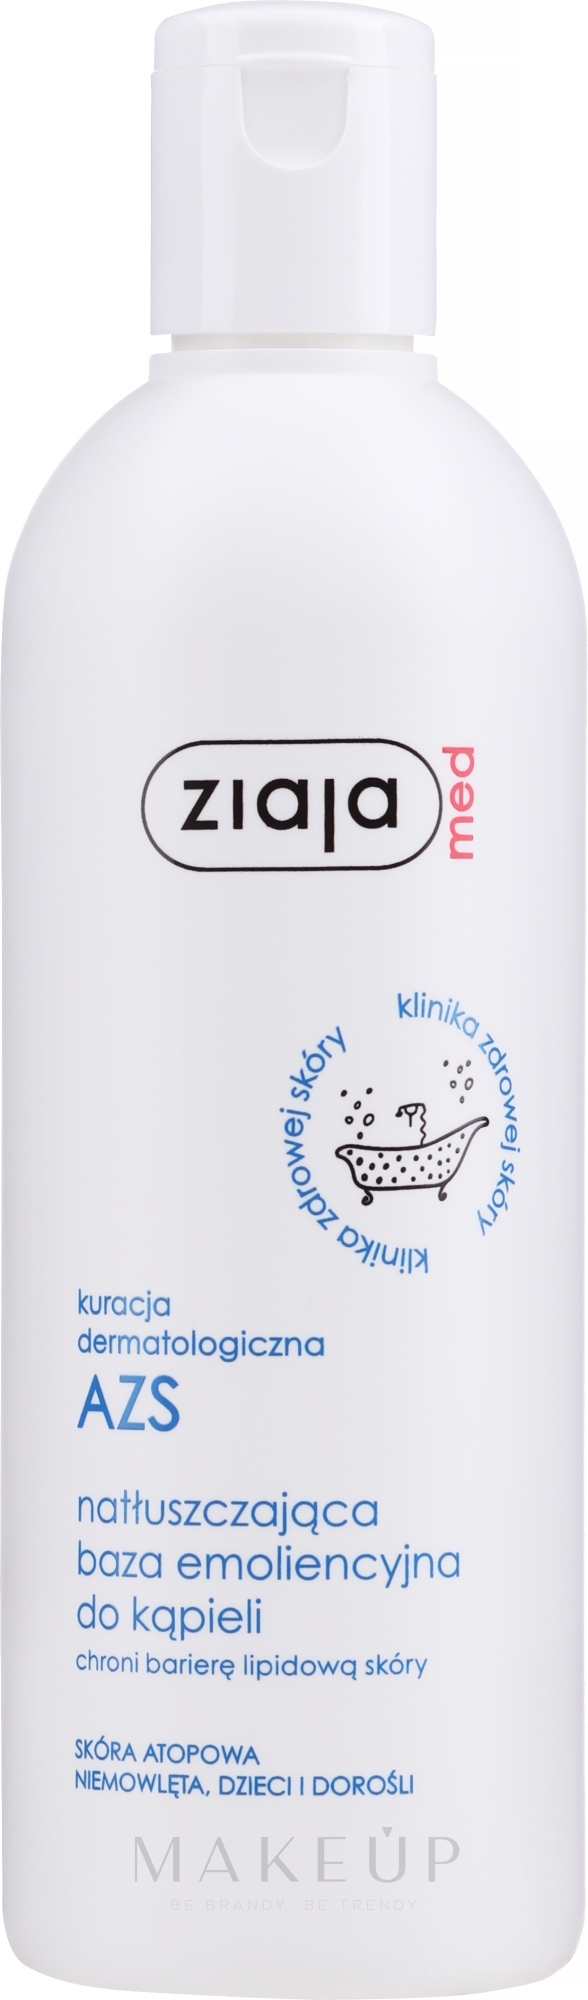 Pflegendes Badeöl für trockene und atopische Haut - Ziaja Med Dermatological Treatment AZS Oiling Base for Bathing — Foto 270 ml